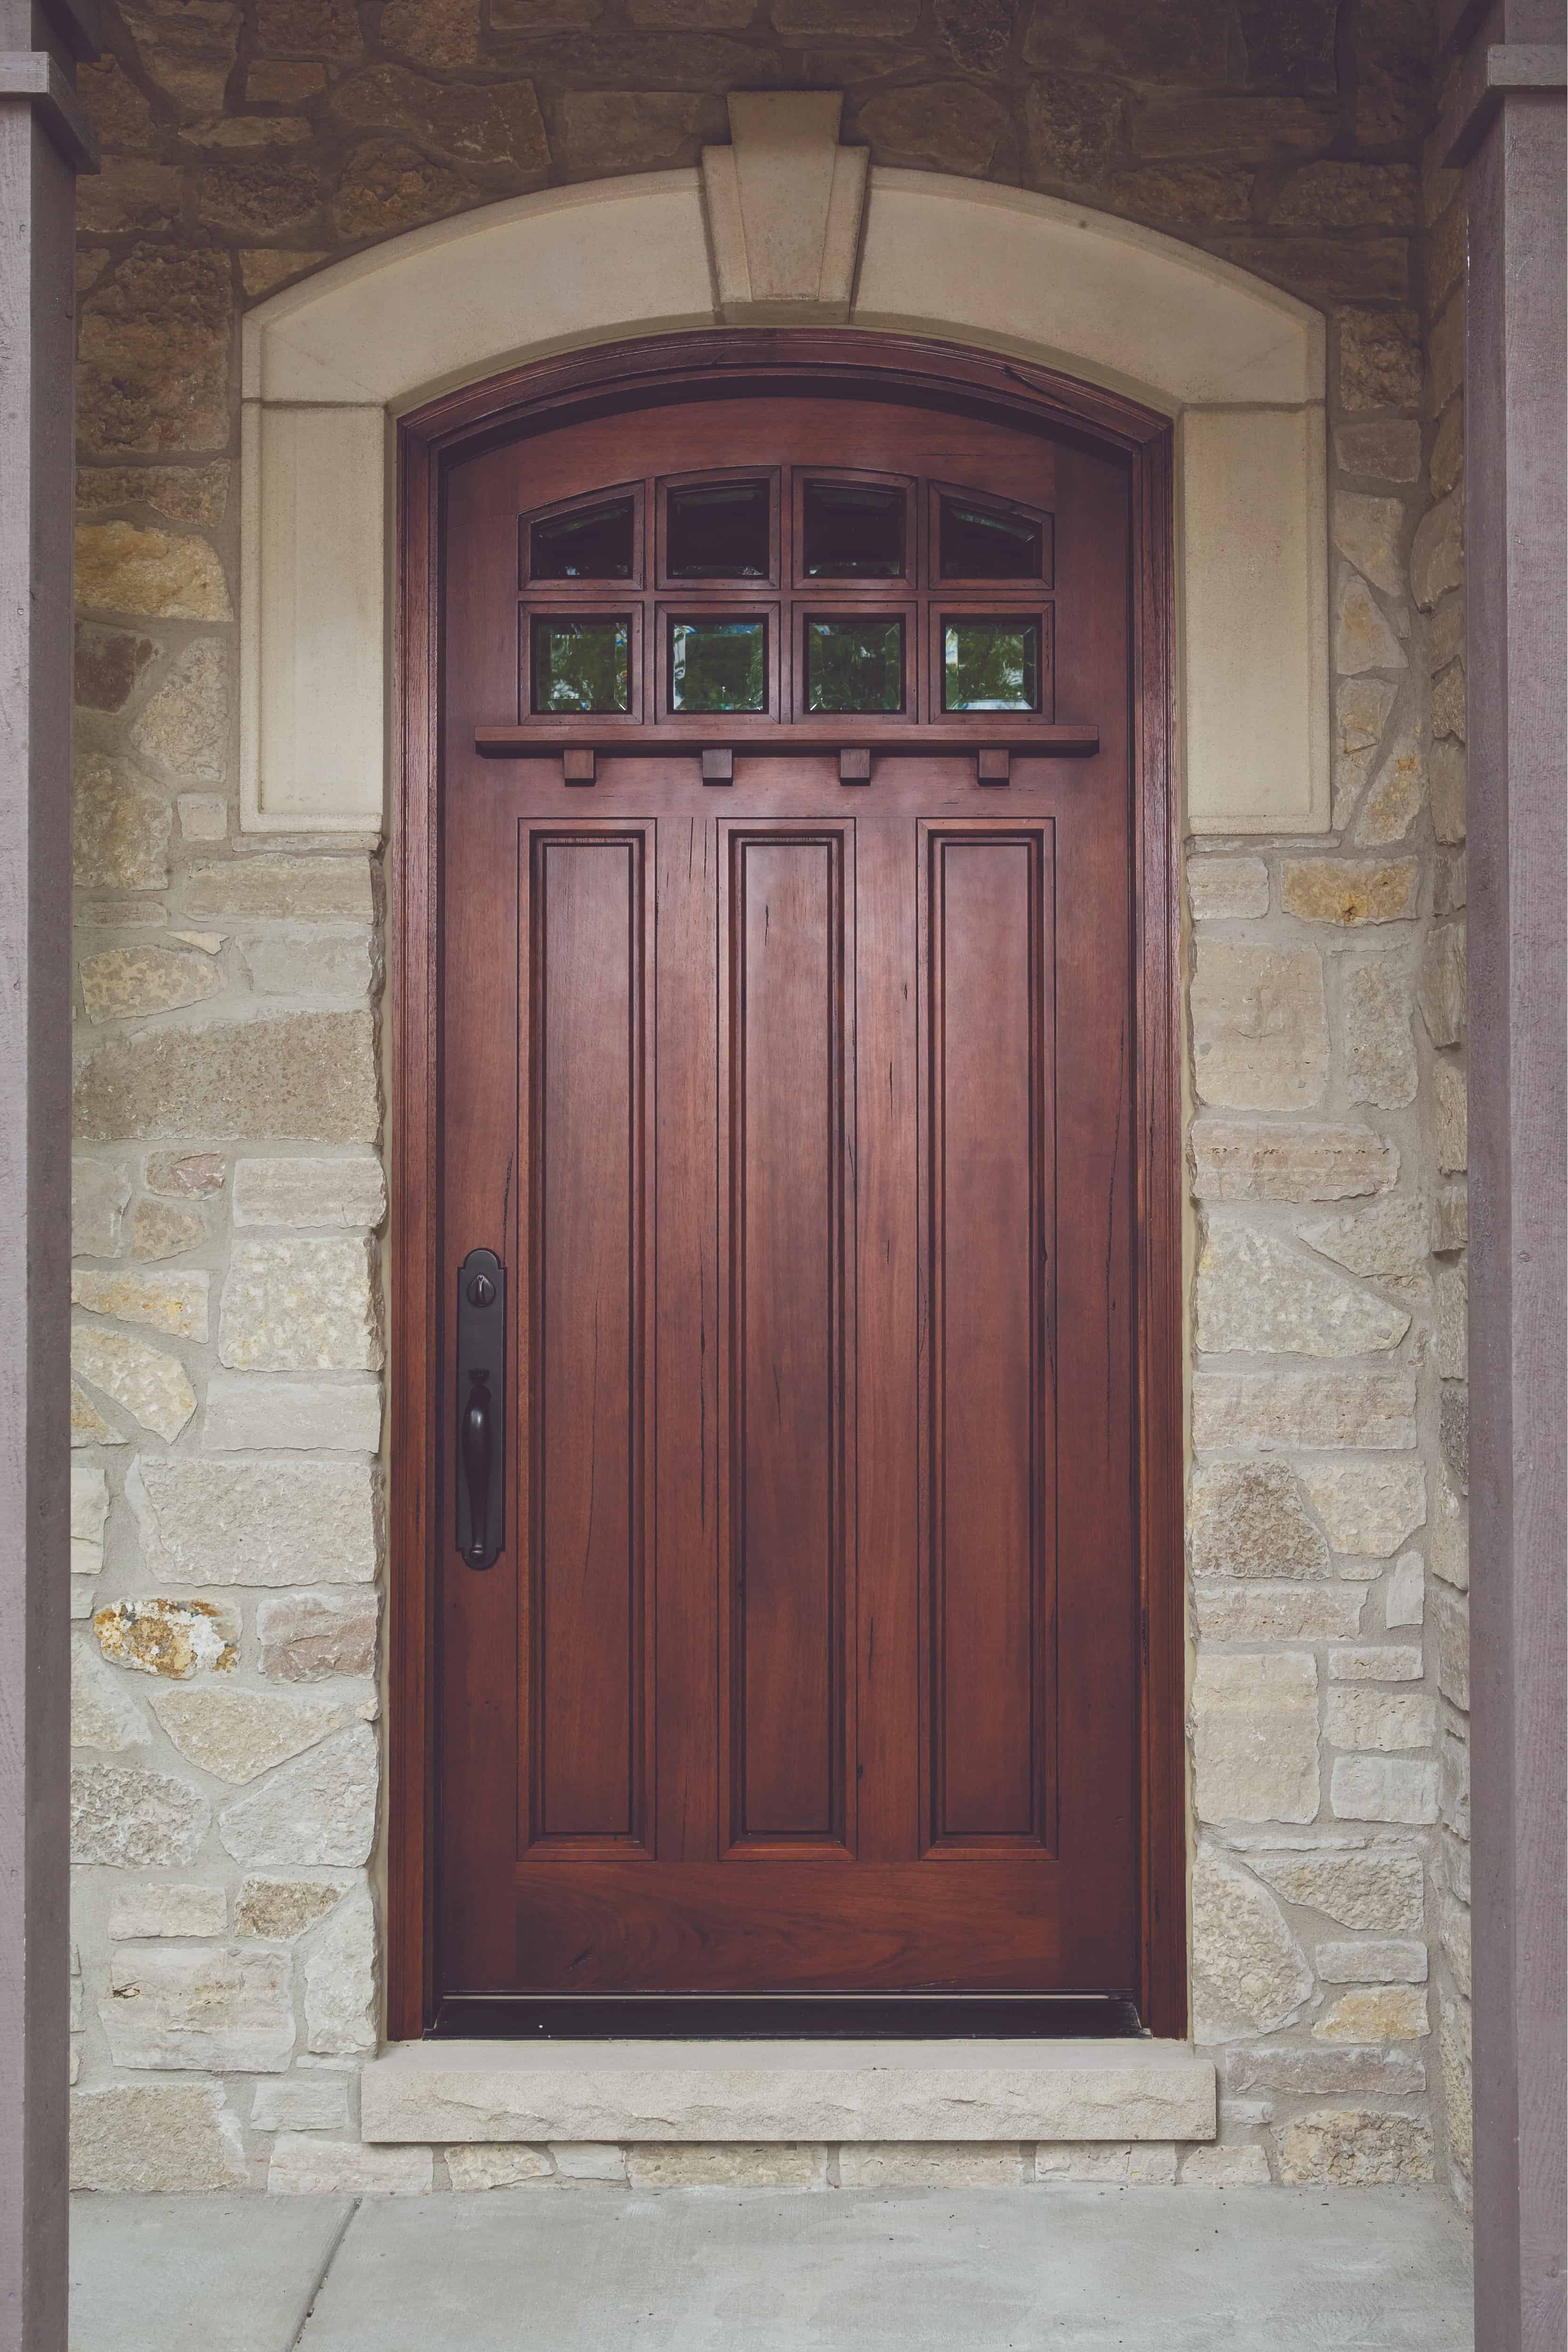 Craftsman style mahogany wood door set in stone entryway